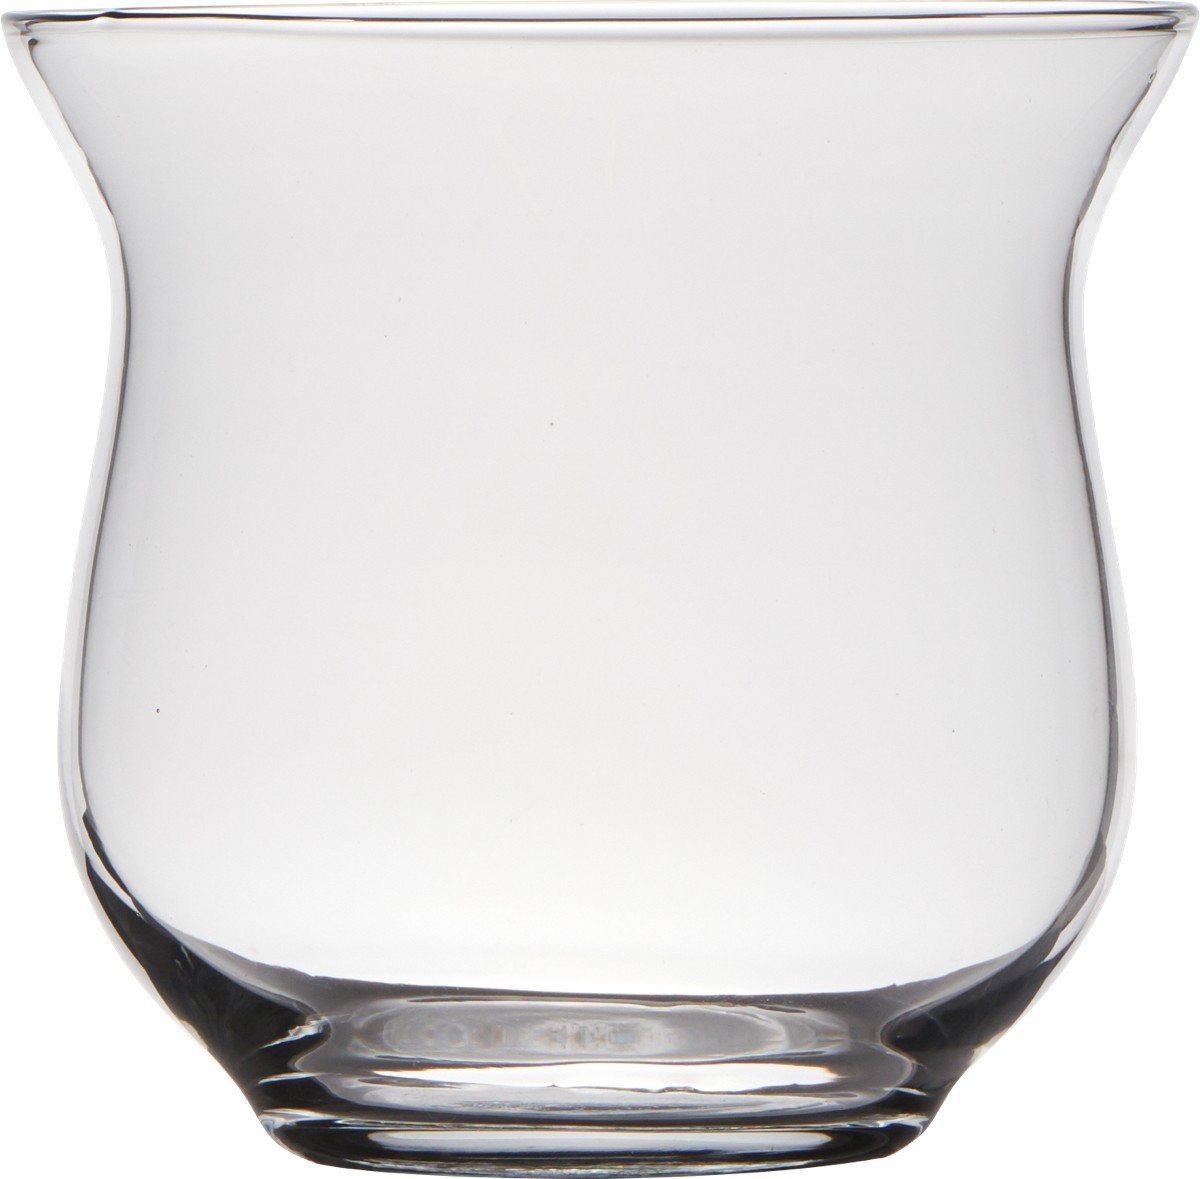 Hakbijl Glass Teelichthalter Amy, Transparent H:11.5cm D:12.5cm Glas von Hakbijl Glass